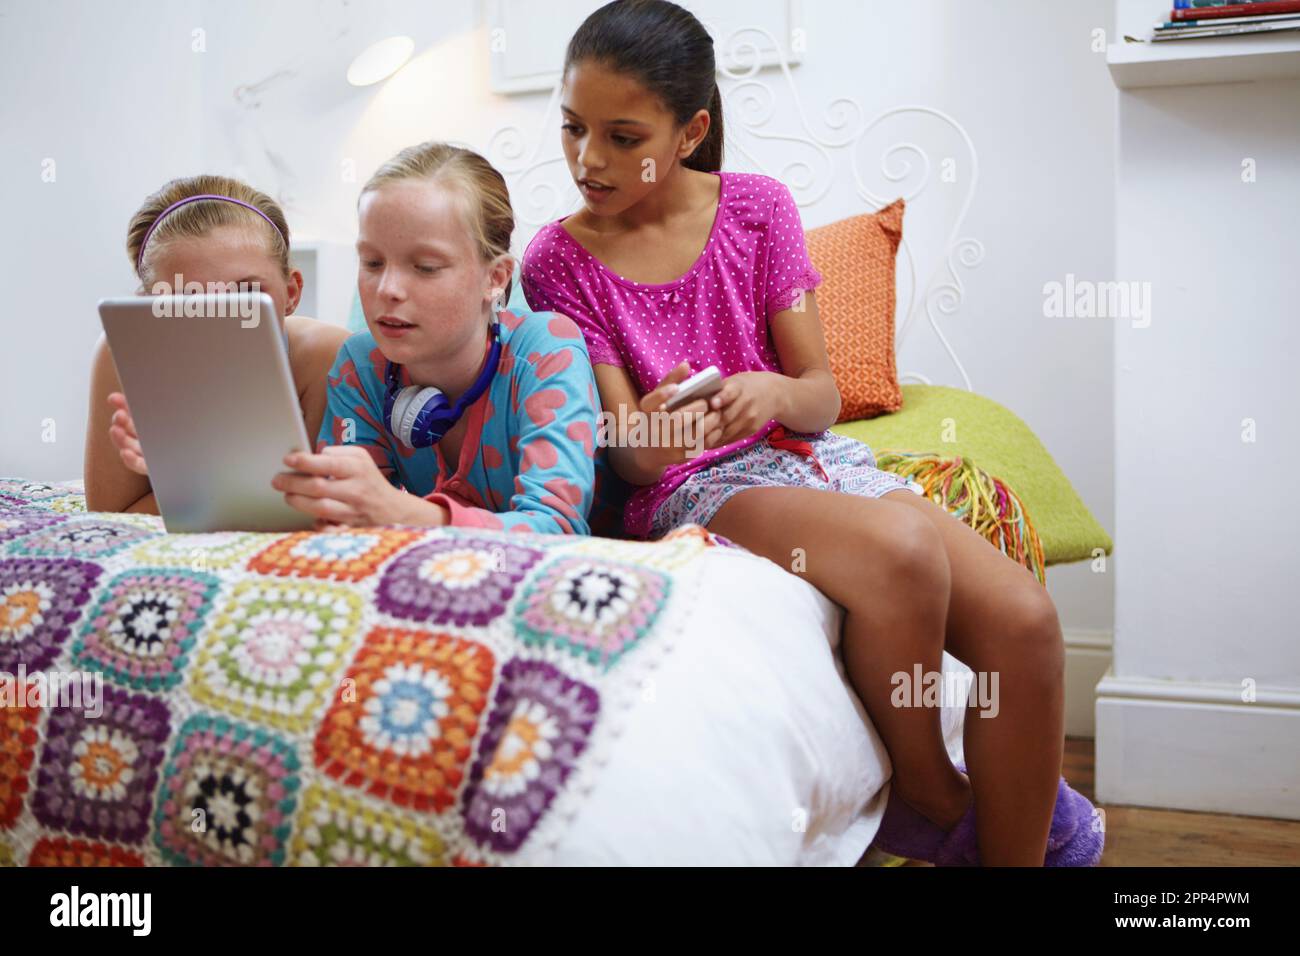 Sie schauen sich ihre Lieblings-rom-Com an. Eine Gruppe von Freunden im Teenageralter, die zusammen ein digitales Tablet verwenden. Stockfoto